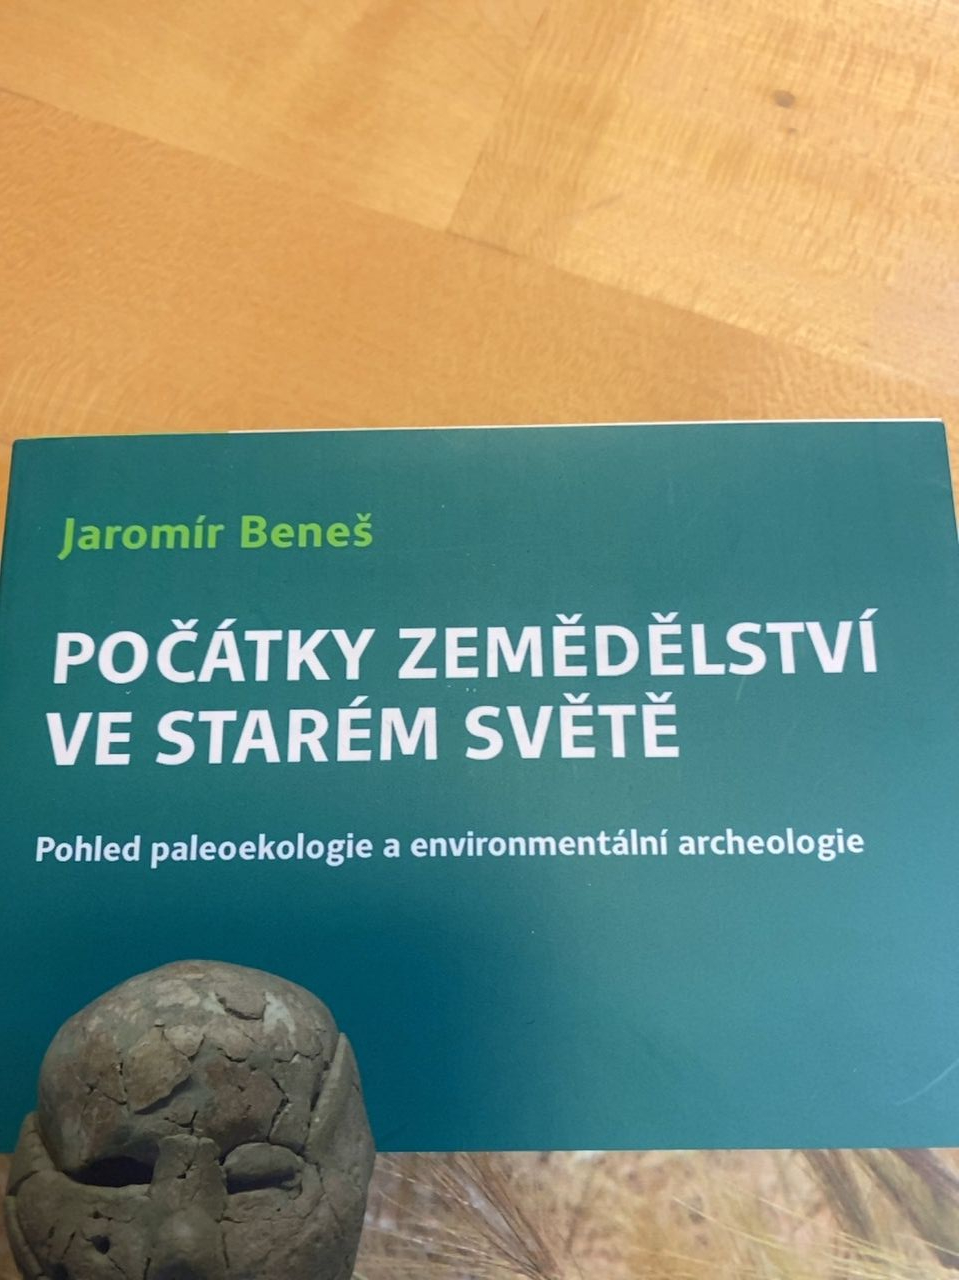 Kniha "Počátky zemědělství ve starém světě" Jaromír Beneš 